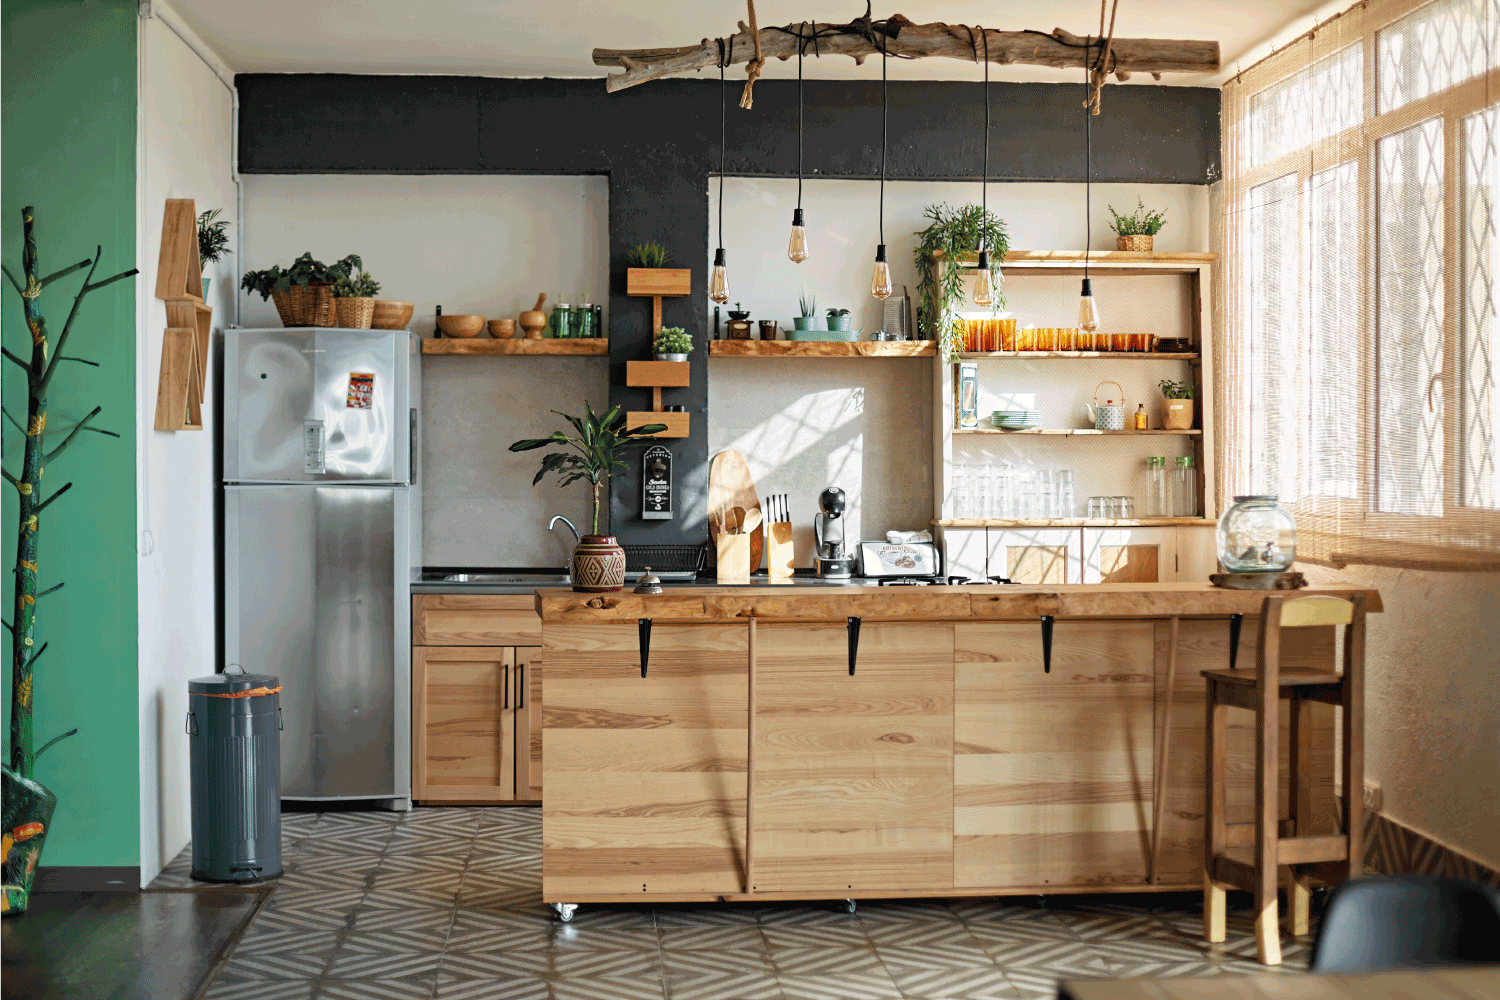 广角视角的空置现代厨房与乡村风格，包括木制厨房岛和悬挂吊灯。bd手机下载